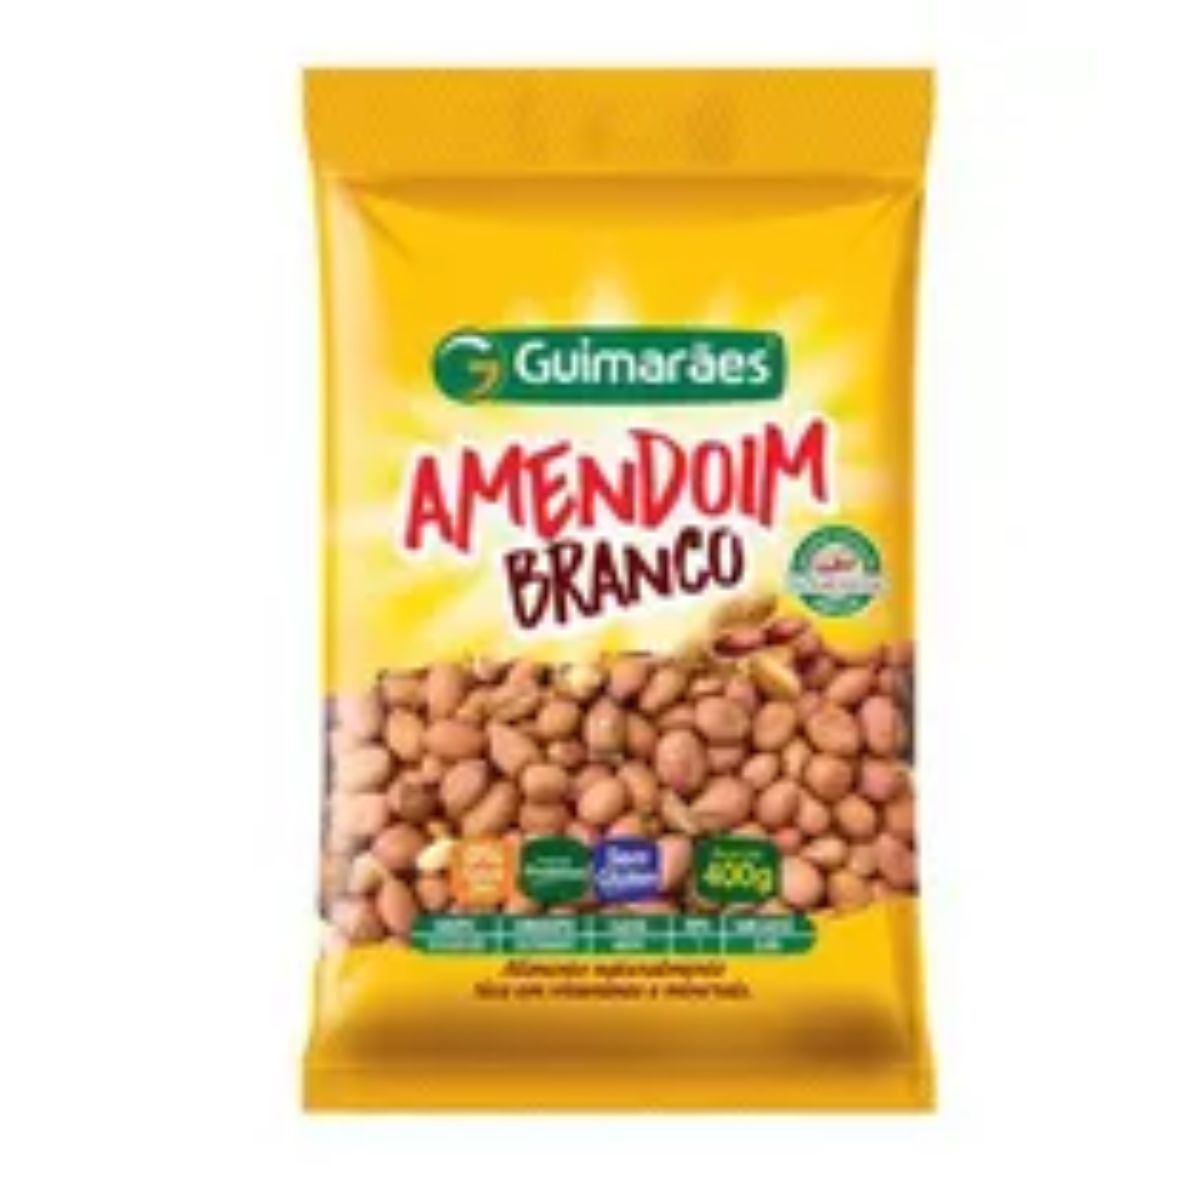 amendoim-branco-guimaraes-400g-1.jpg